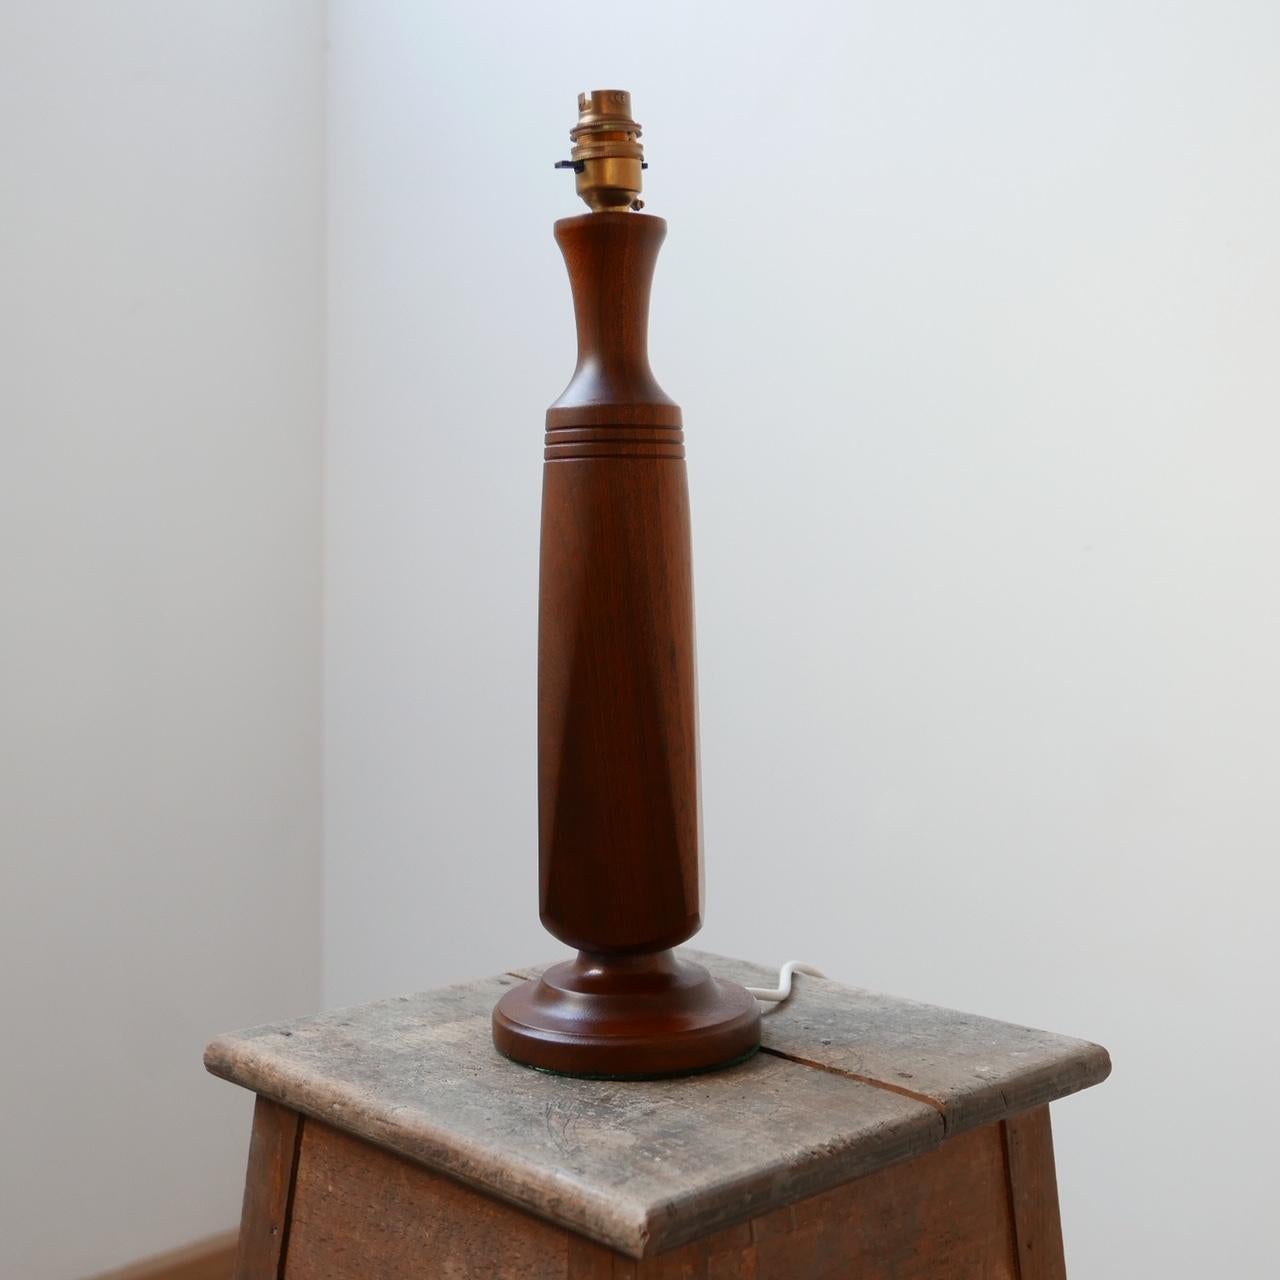 Une élégante lampe de table en teck du milieu du siècle dernier.

Probablement danois, vers les années 1960.

Bois tourné simple et élégant.

Recâblage et test PAT.

Dimensions : 46 hauteur x 12 diamètre en cm.